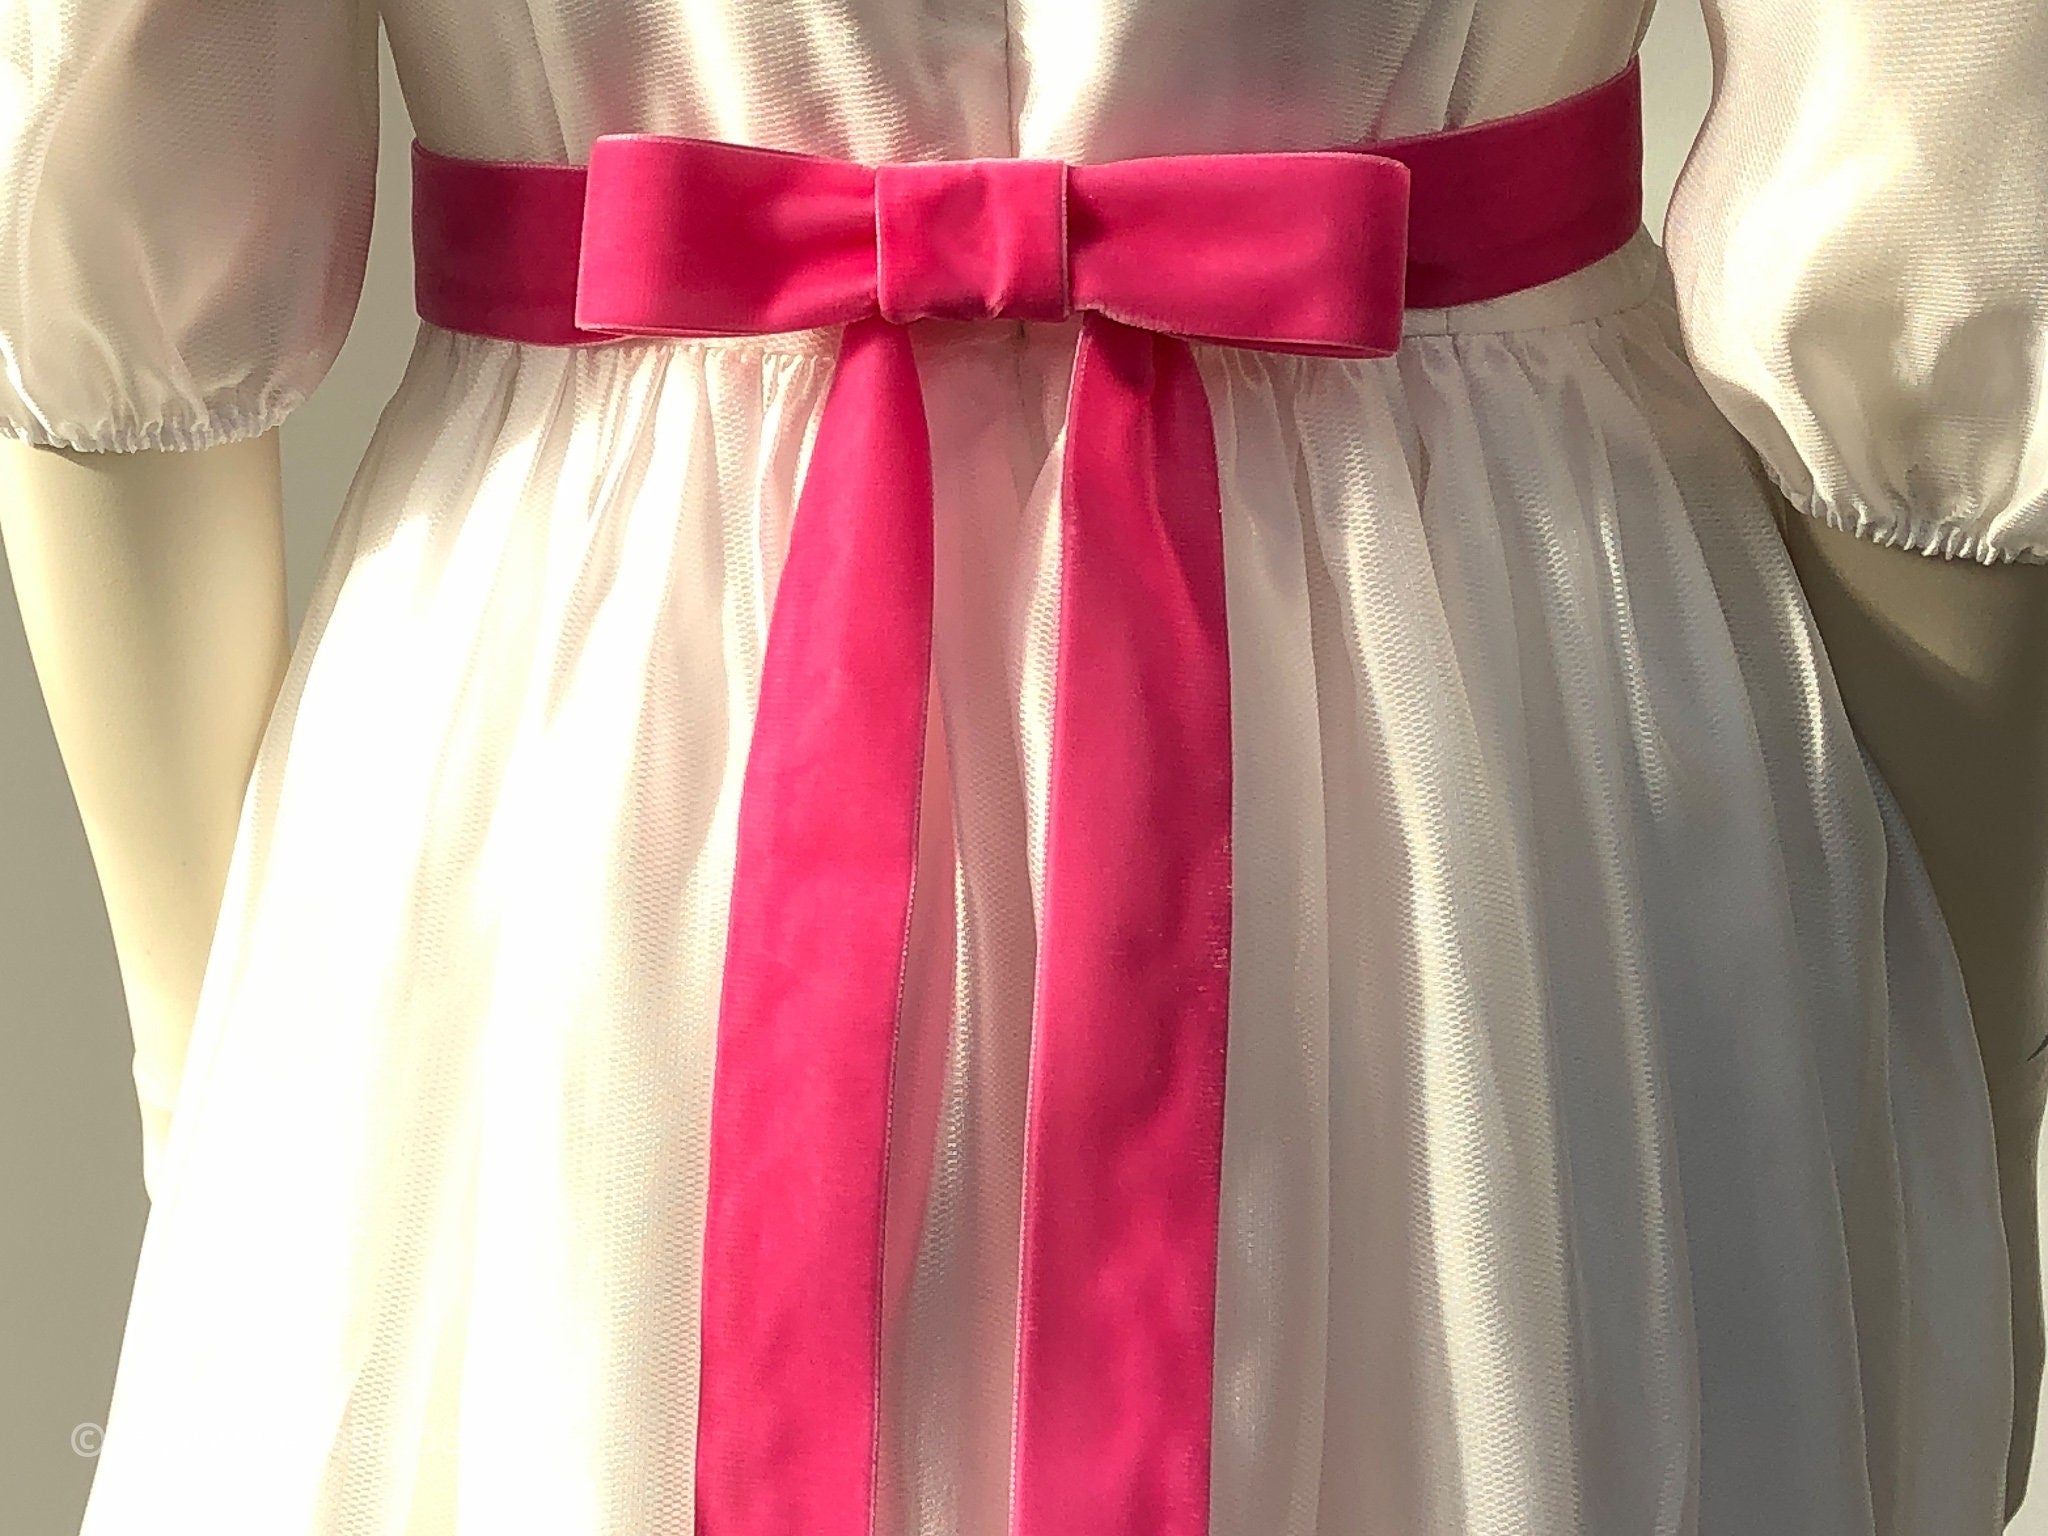 Samtgürtel mit Schleife in Pink, Altrosa, Pastell 72 Farben, 3 Breiten. Schweizer Qualität für Kleid, Brautkleid, Ballkleid, Dirndl.